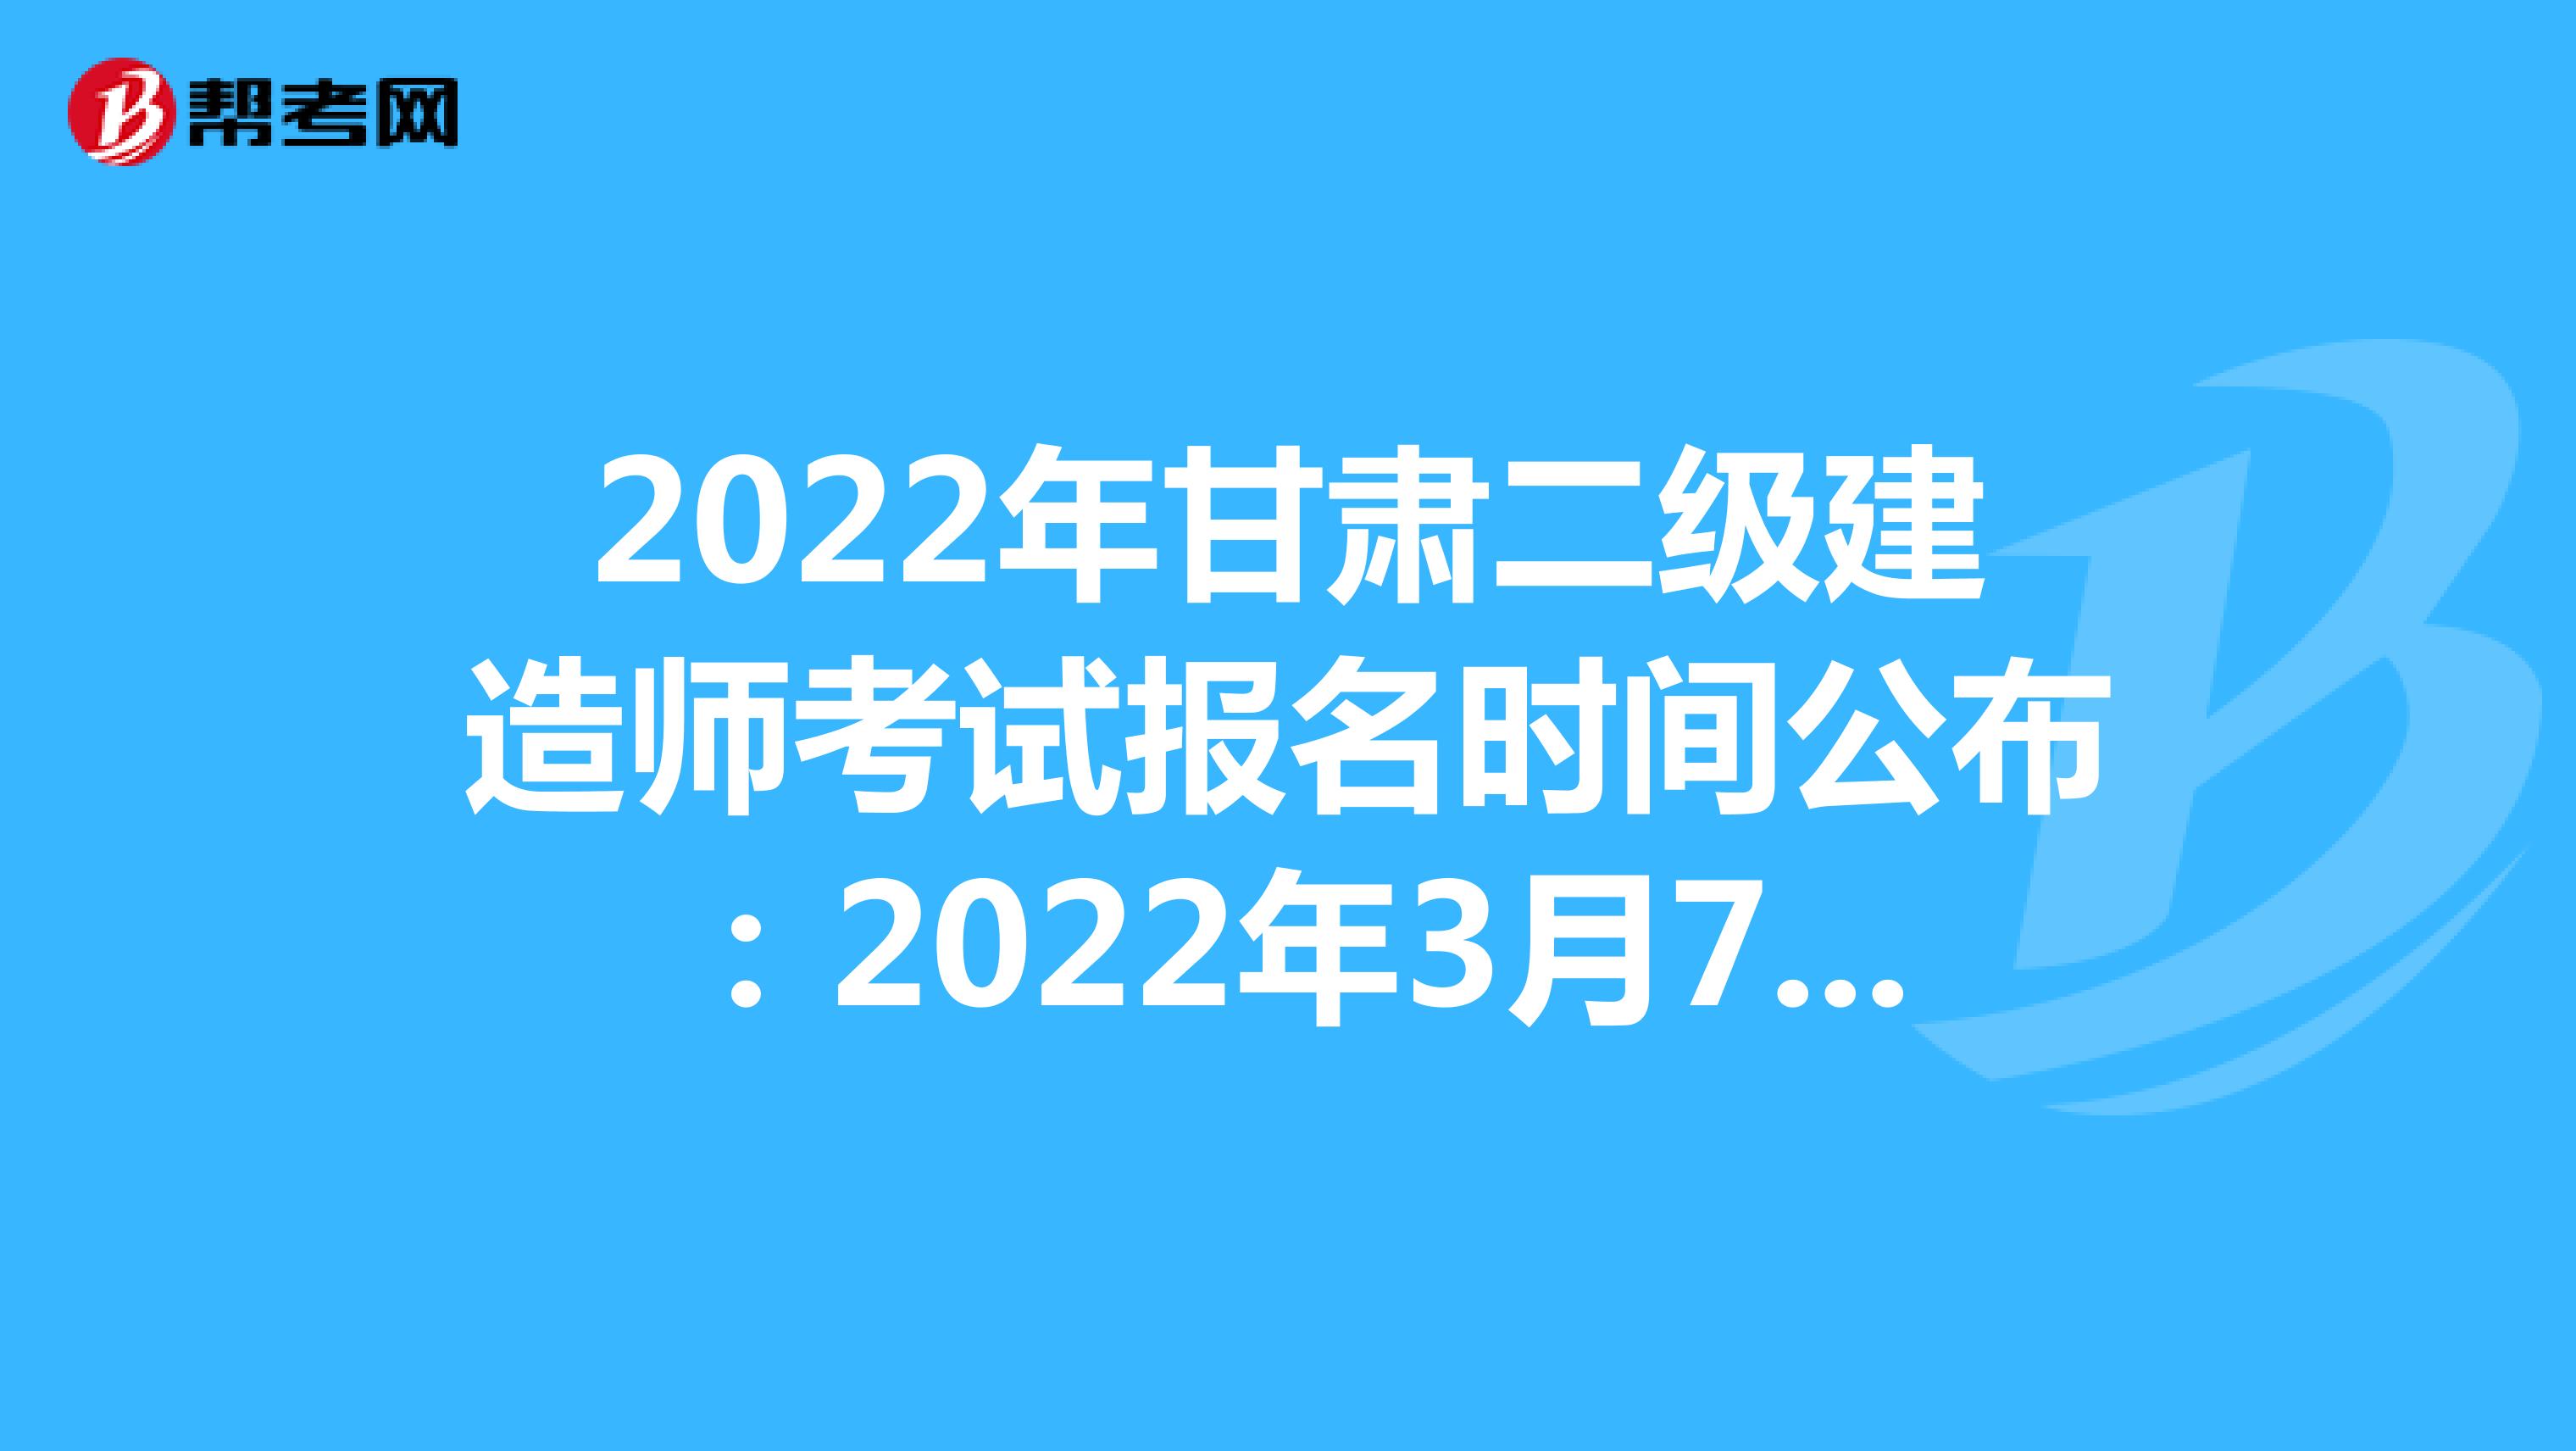 2022年甘肅二級建造師考試報名時間公布：2022年3月7日-3月16日